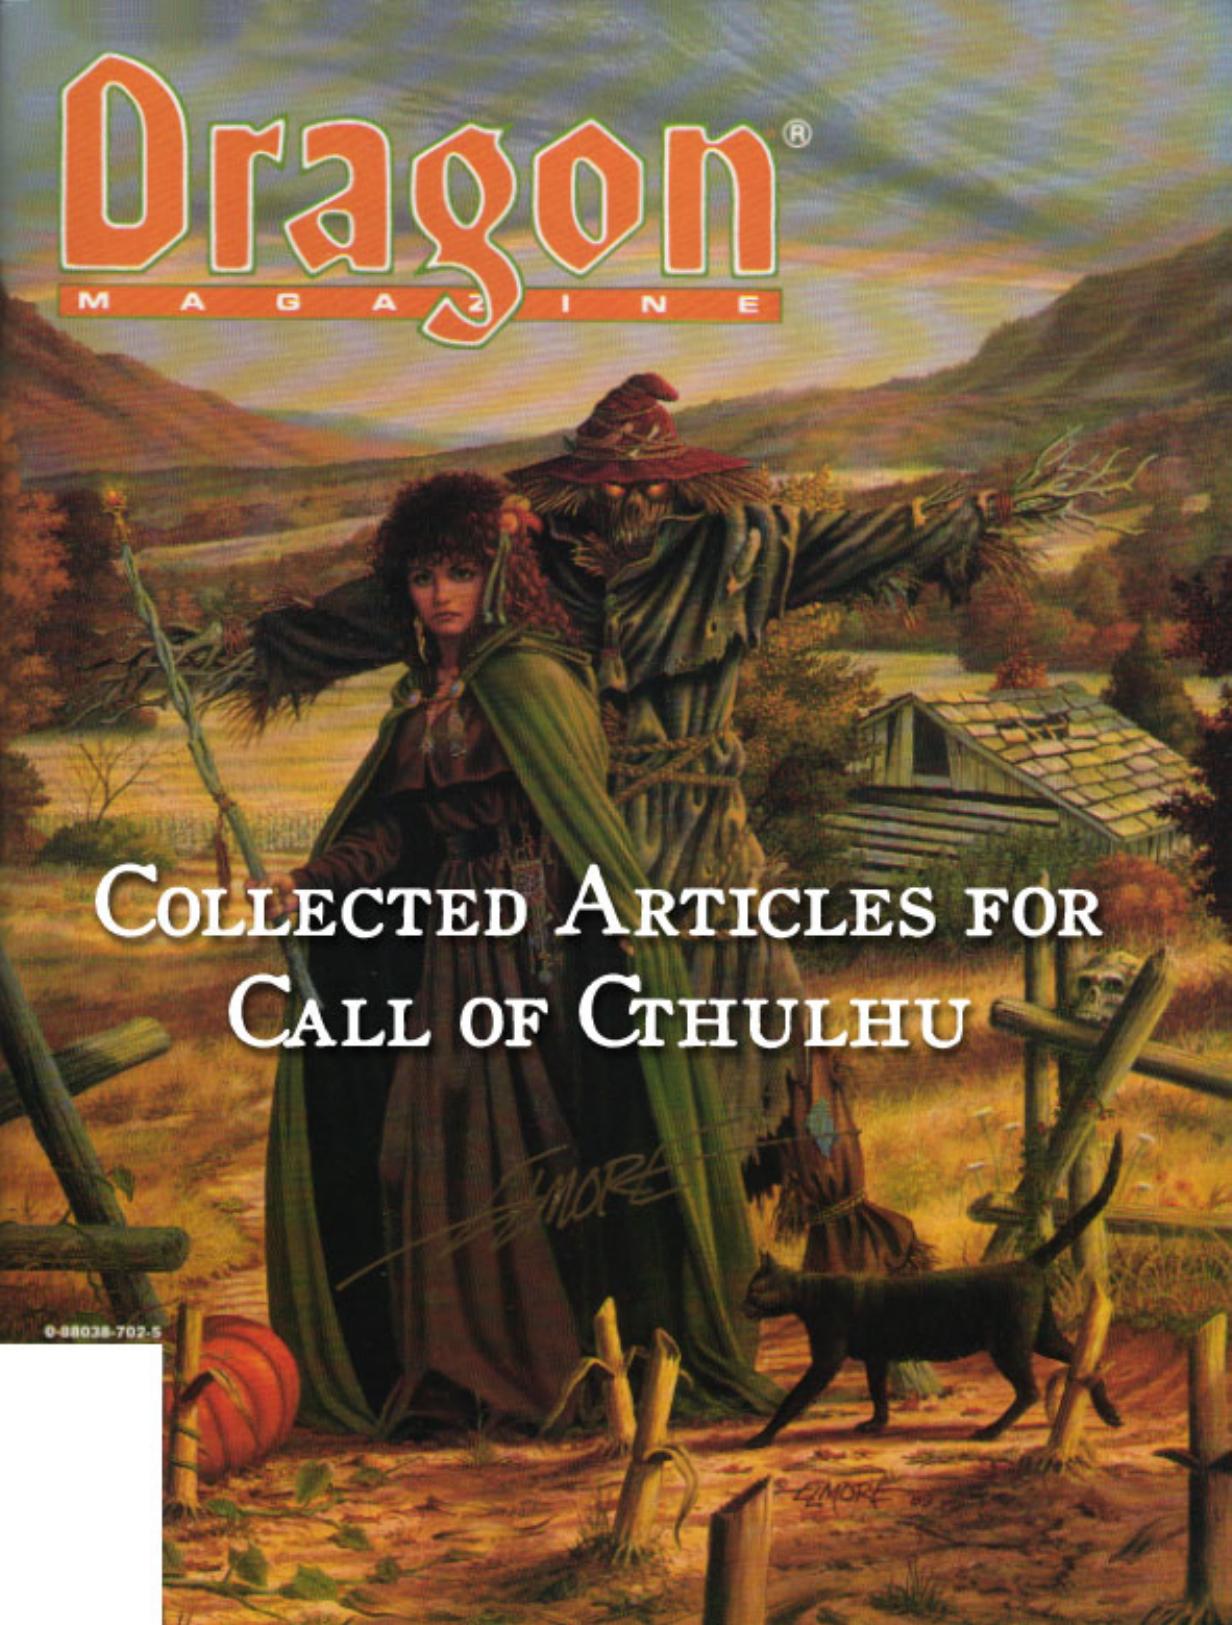 CoC Dragon Magazine Omnibus